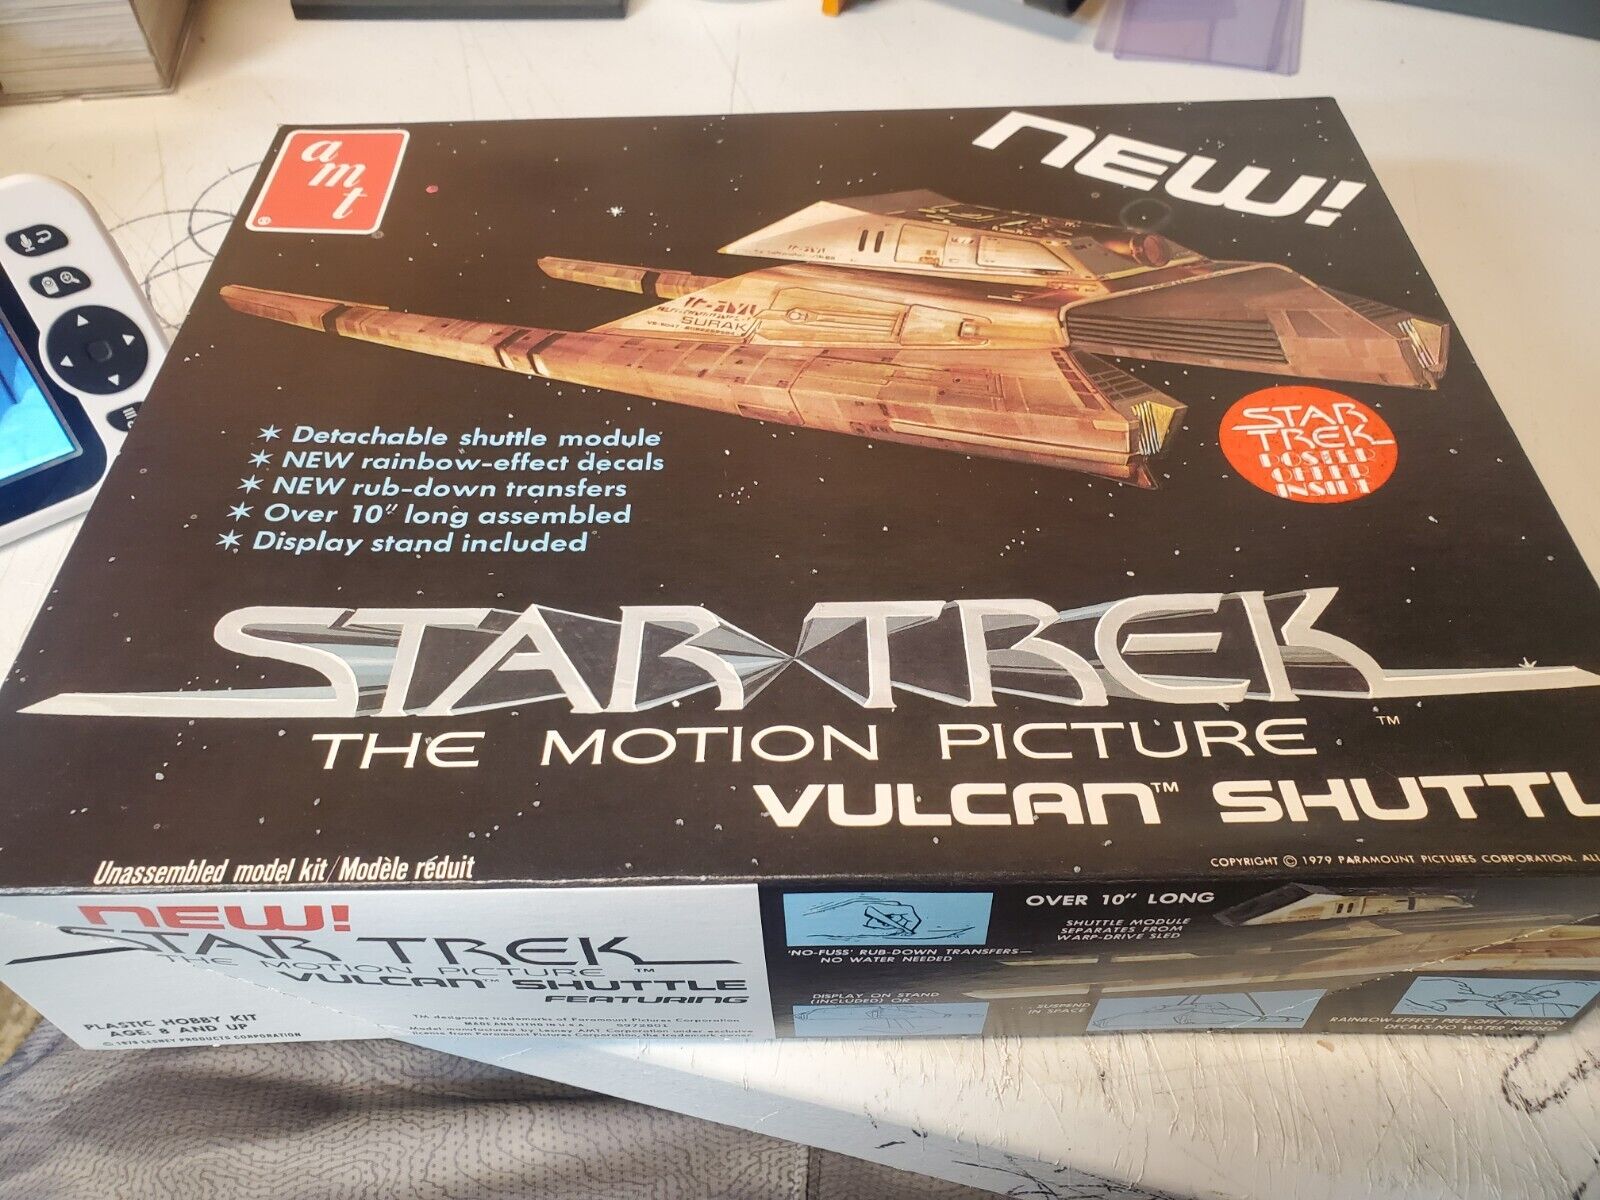 1984 AMT Model STAR TREK MOTION PICTURE VULCAN SHUTTLE Kit